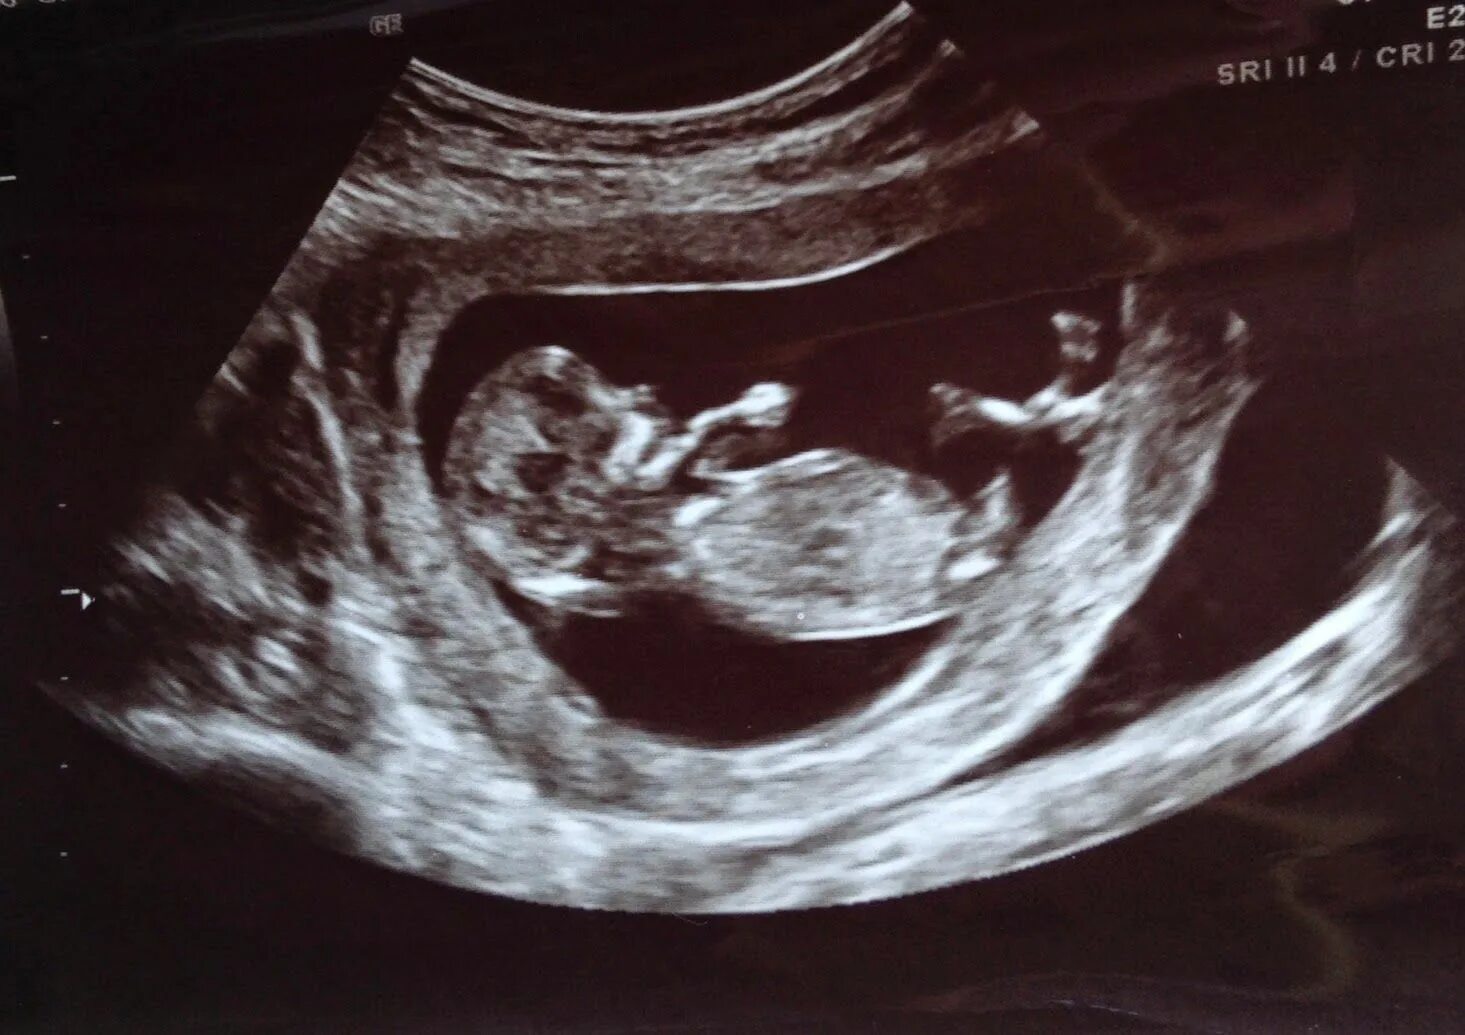 Фото мальчика 12 недель. УЗИ 13 недель беременности мальчик. УЗИ 11-12 недель беременности пол ребенка. УЗИ 12 недель беременности девочка. УЗИ плода 12 недель мальчик.